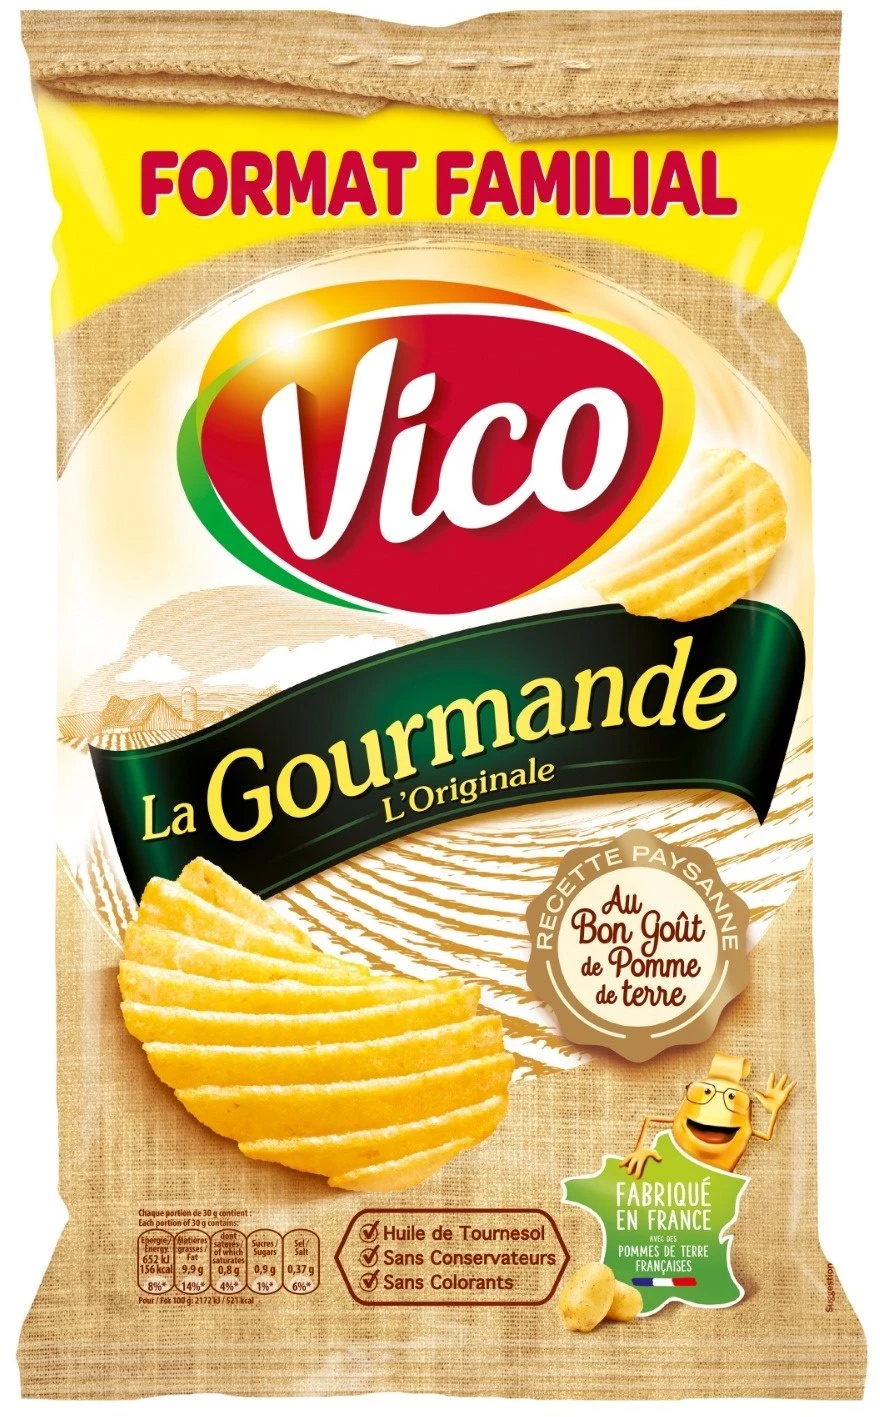 Patatine La Gourmande L'Origina, 200g - VICO